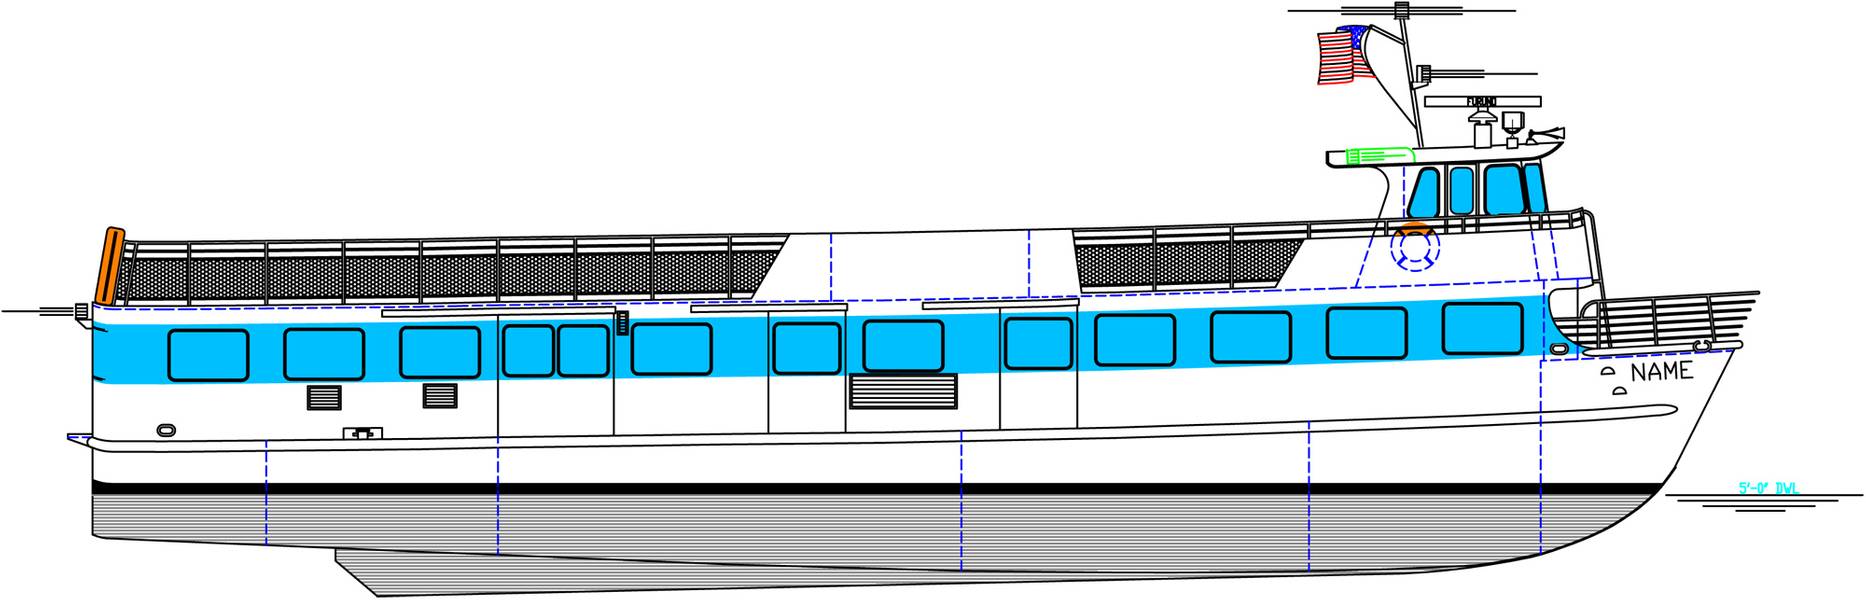 Die 85 ft. Fähre Blount wird für Fire Island Ferries gebaut. (Bild: Blount Boats)